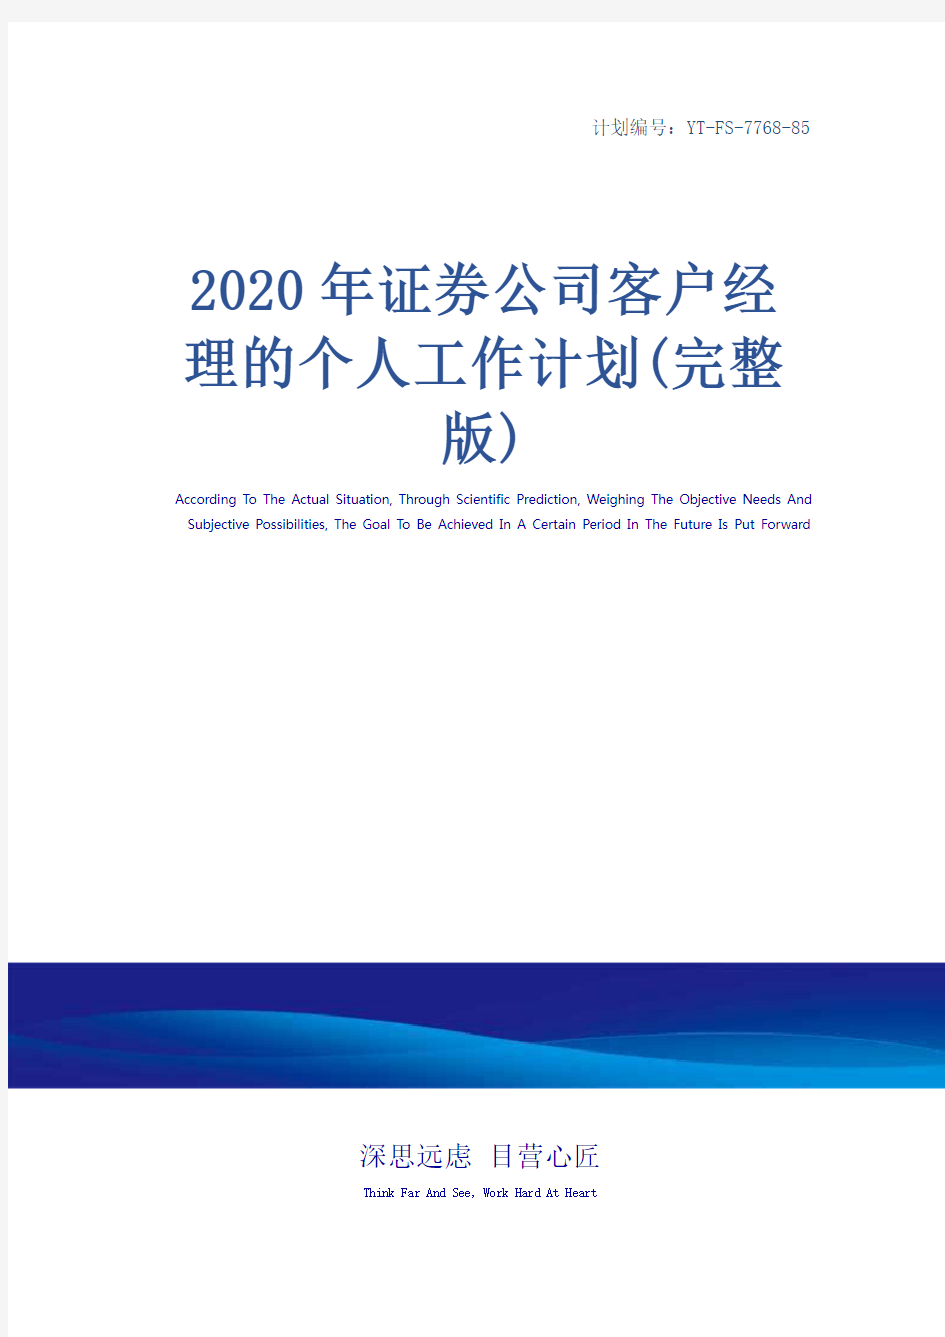 2020年证券公司客户经理的个人工作计划(完整版)